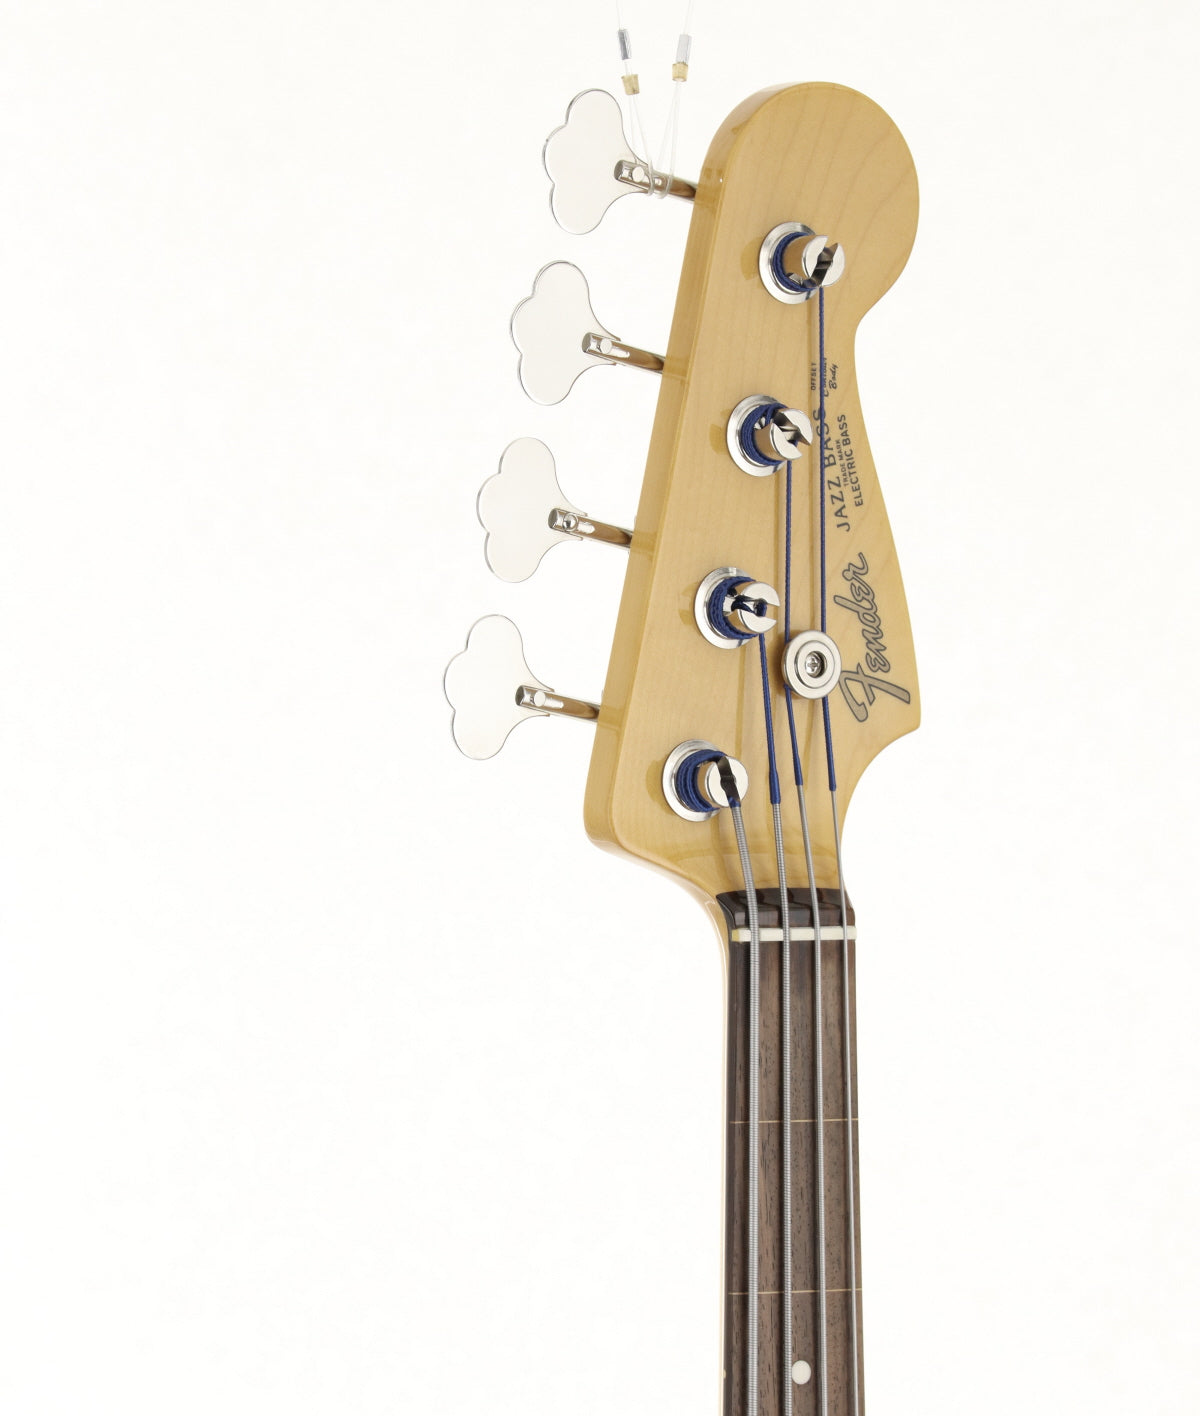 [SN CIJ R050397] USED Fender Japan / JB62-77FL 3TS [06]